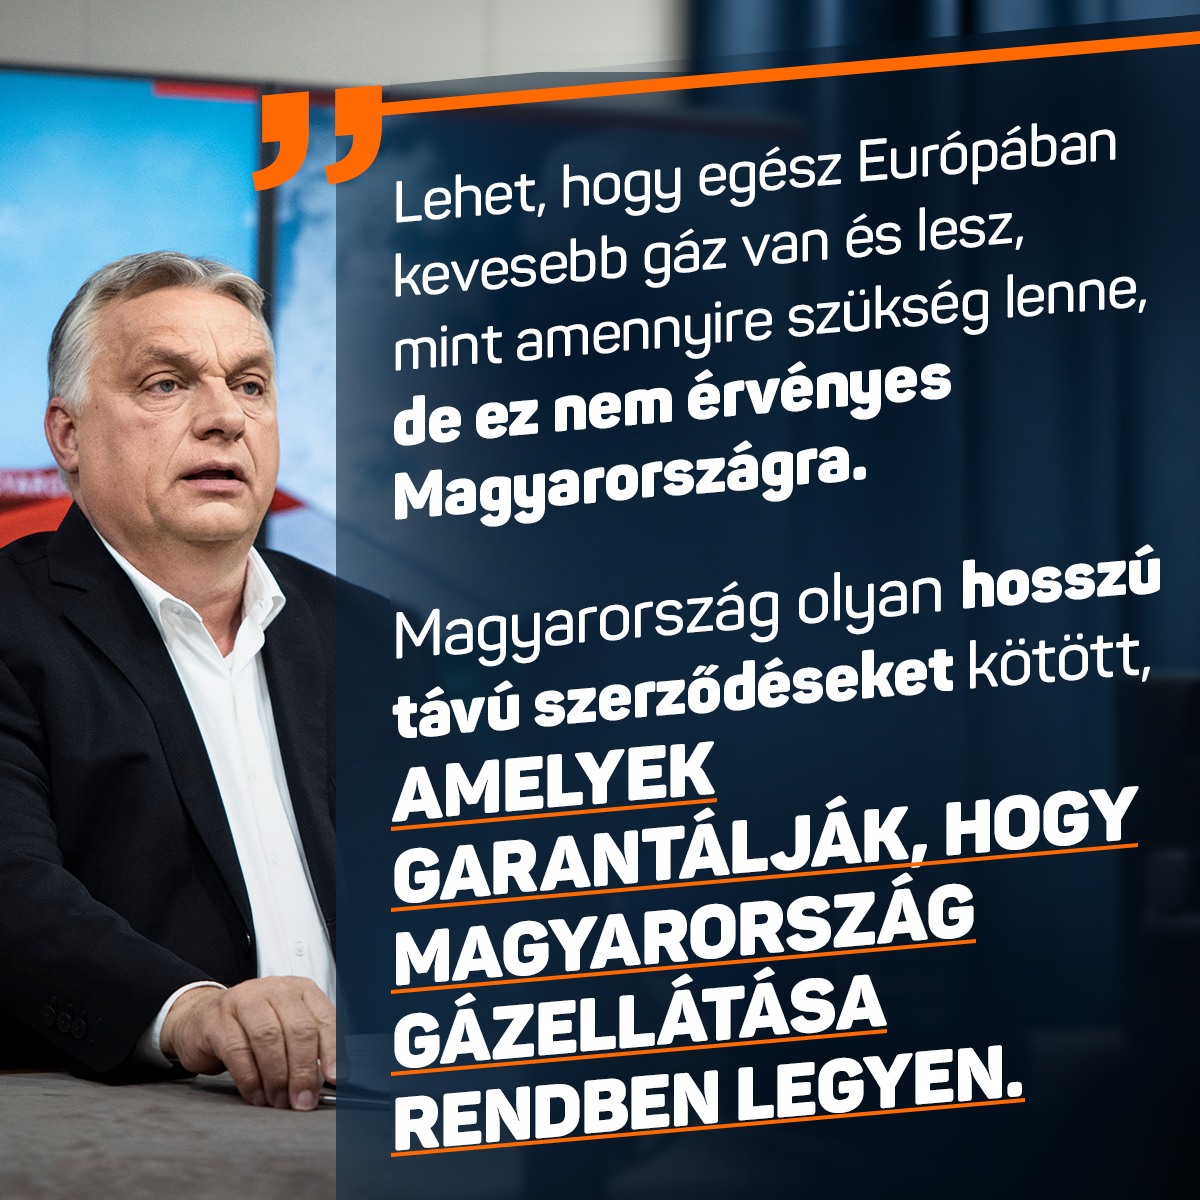 Télen fűteni kell, az iparnak pedig működnie kell. Ennek a feltételei adottak – mondta Orbán Viktor a Kossuth Rádióban.